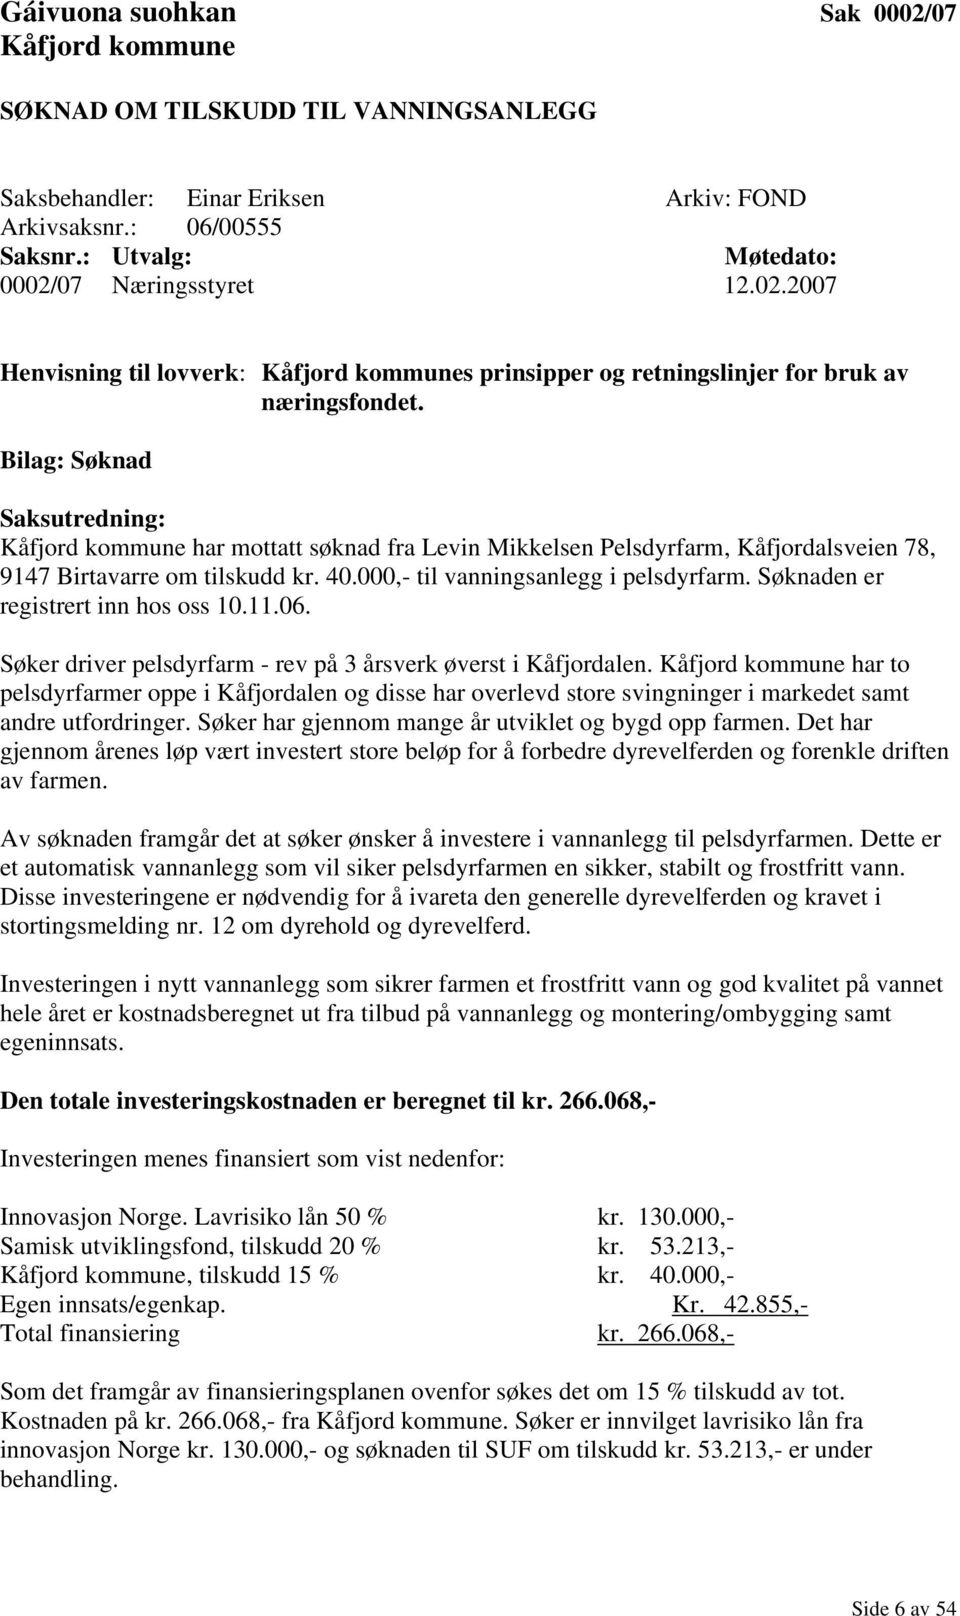 Bilag: Søknad Saksutredning: Kåfjord kommune har mottatt søknad fra Levin Mikkelsen Pelsdyrfarm, Kåfjordalsveien 78, 9147 Birtavarre om tilskudd kr. 40.000,- til vanningsanlegg i pelsdyrfarm.